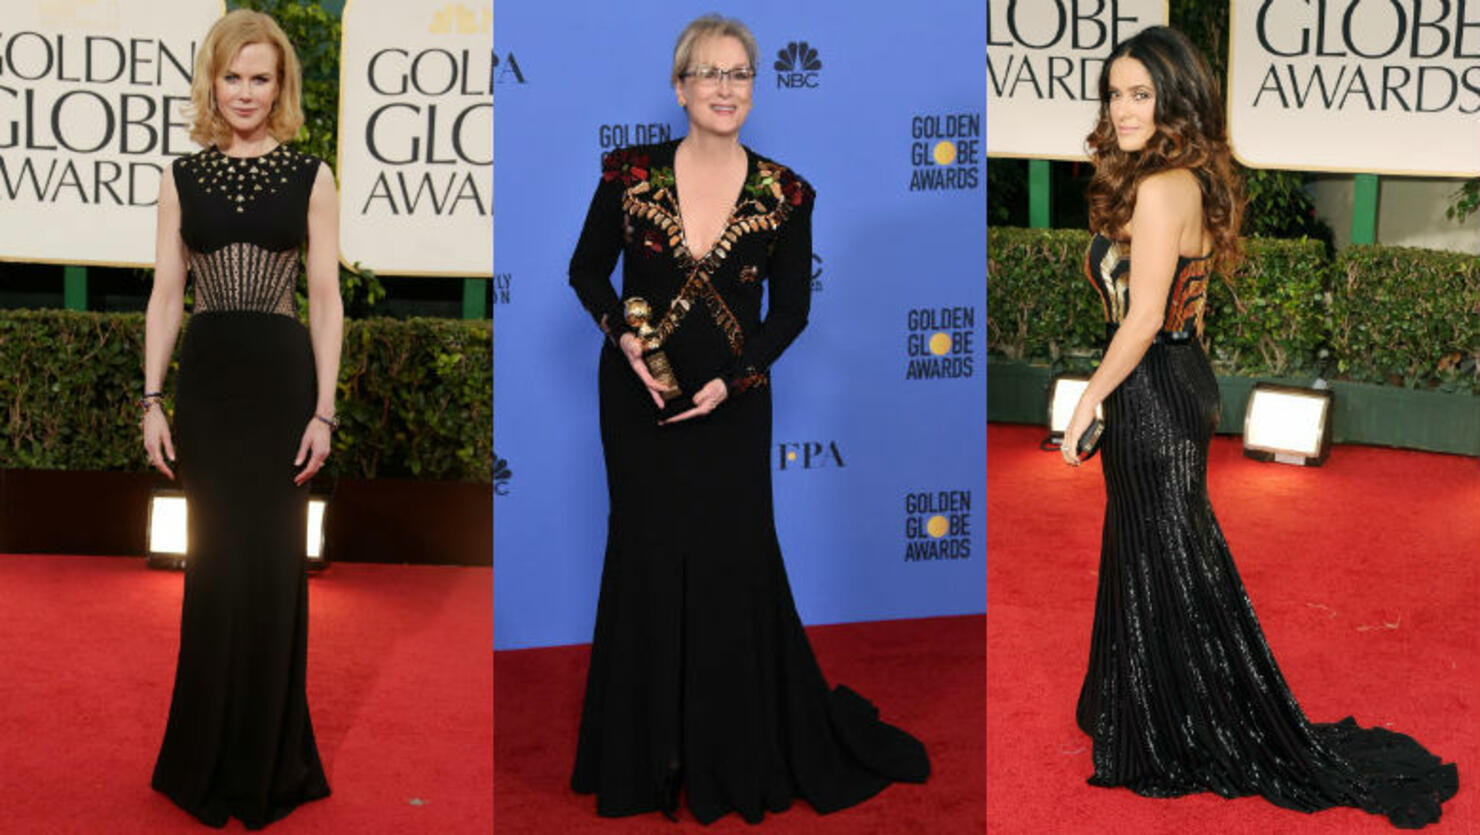 Golden Globes, Black Dresses